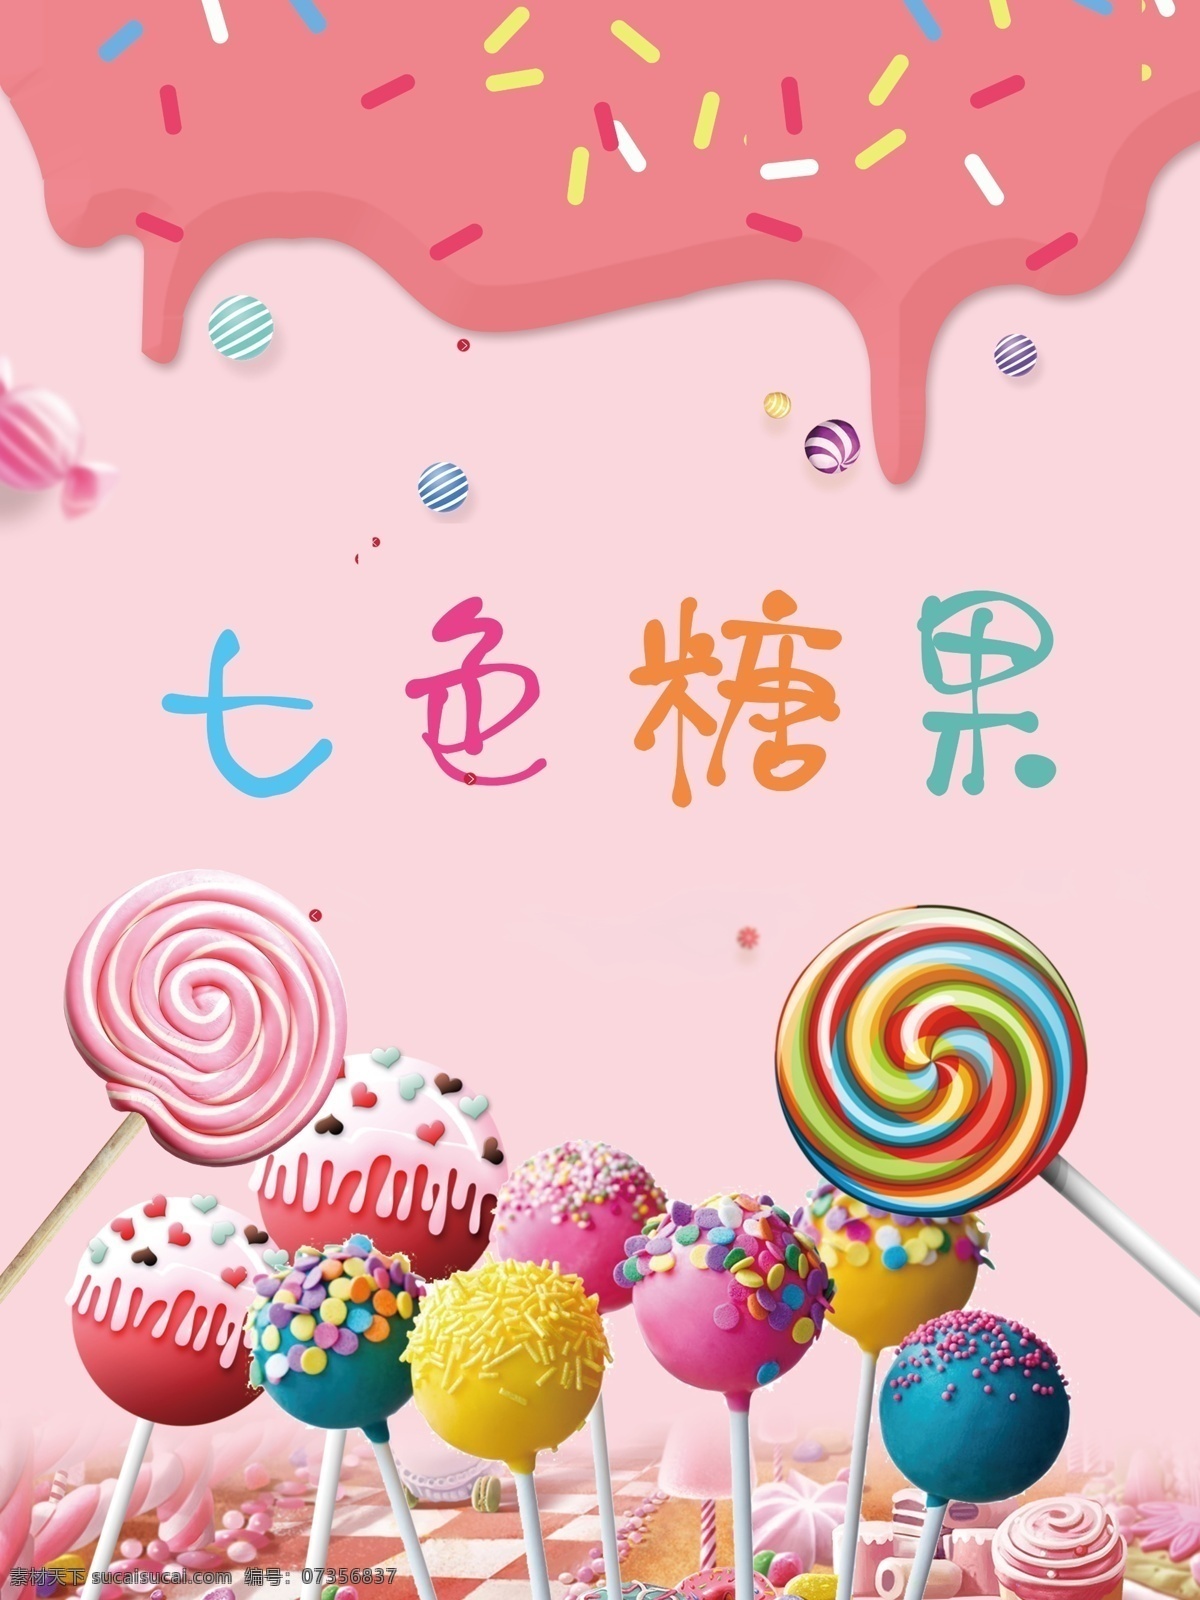 七色糖果 糖果包装 手提袋 棒棒糖 糖果 彩色棒棒糖 色彩 粉色 分层